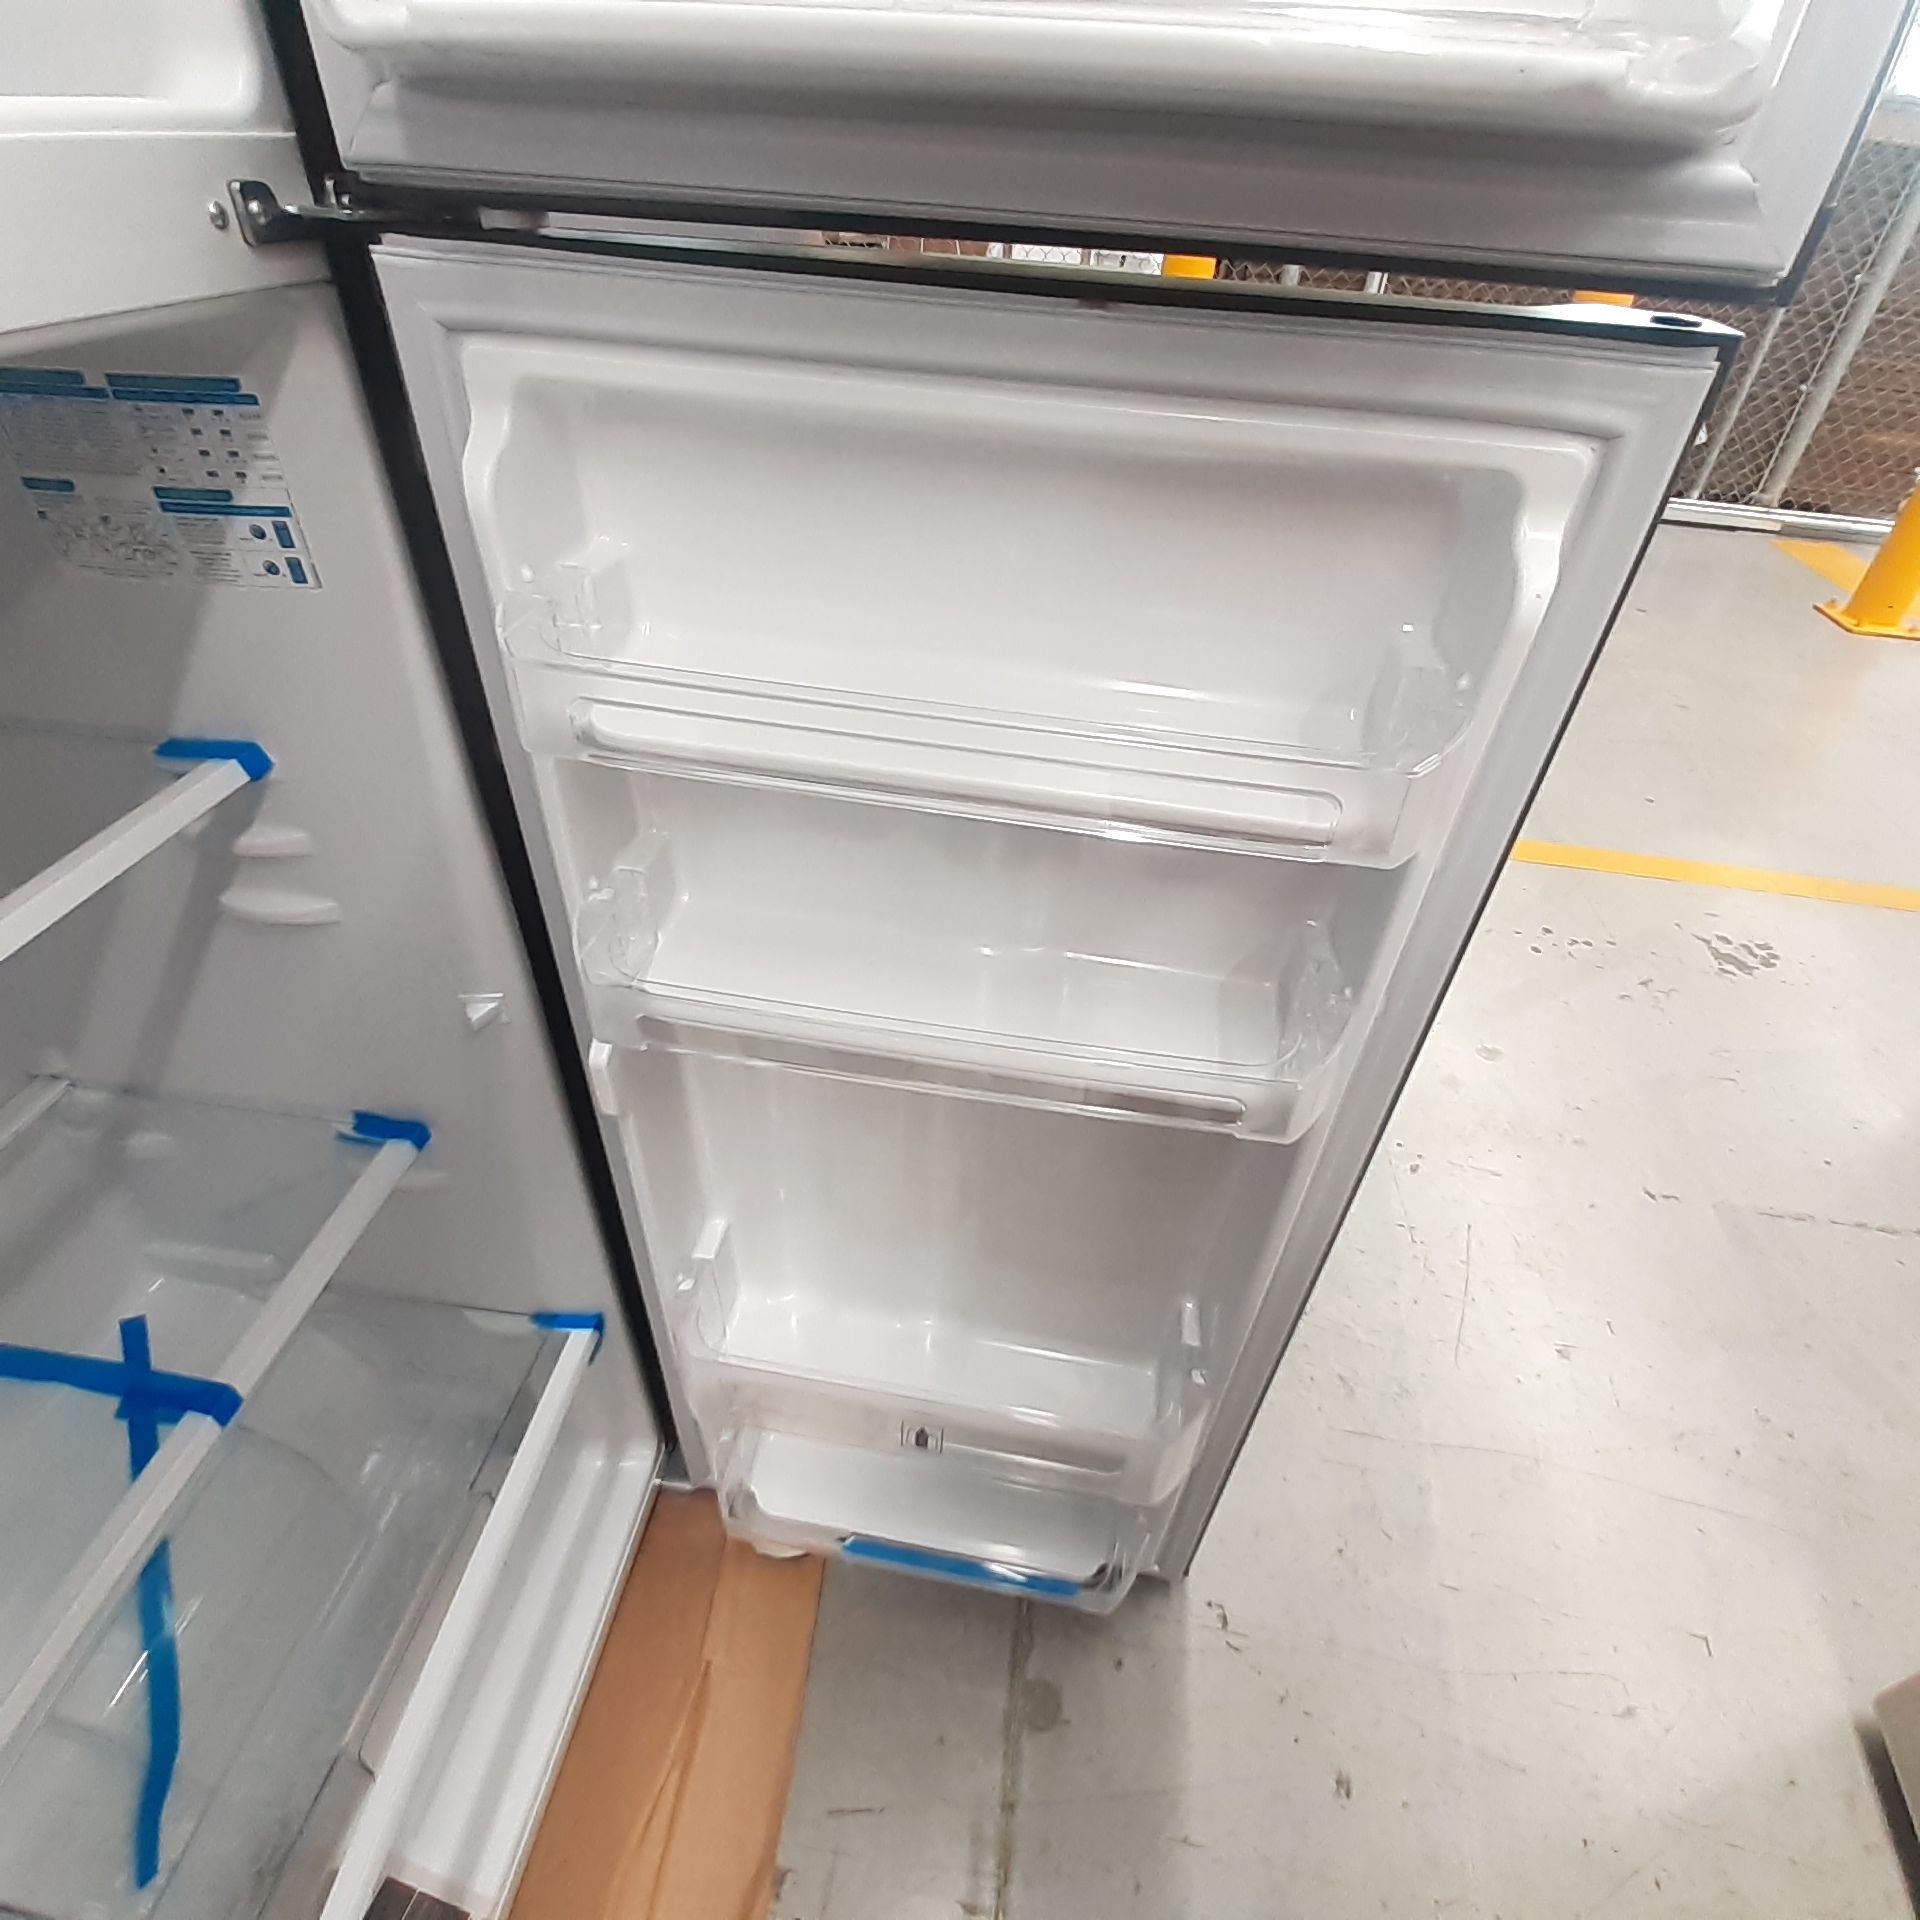 Lote De 2 Refrigeradores Contiene: 1 Refrigerador Marca Mabe, 1 Refrigerador Marca Hisense, Distinto - Image 8 of 14